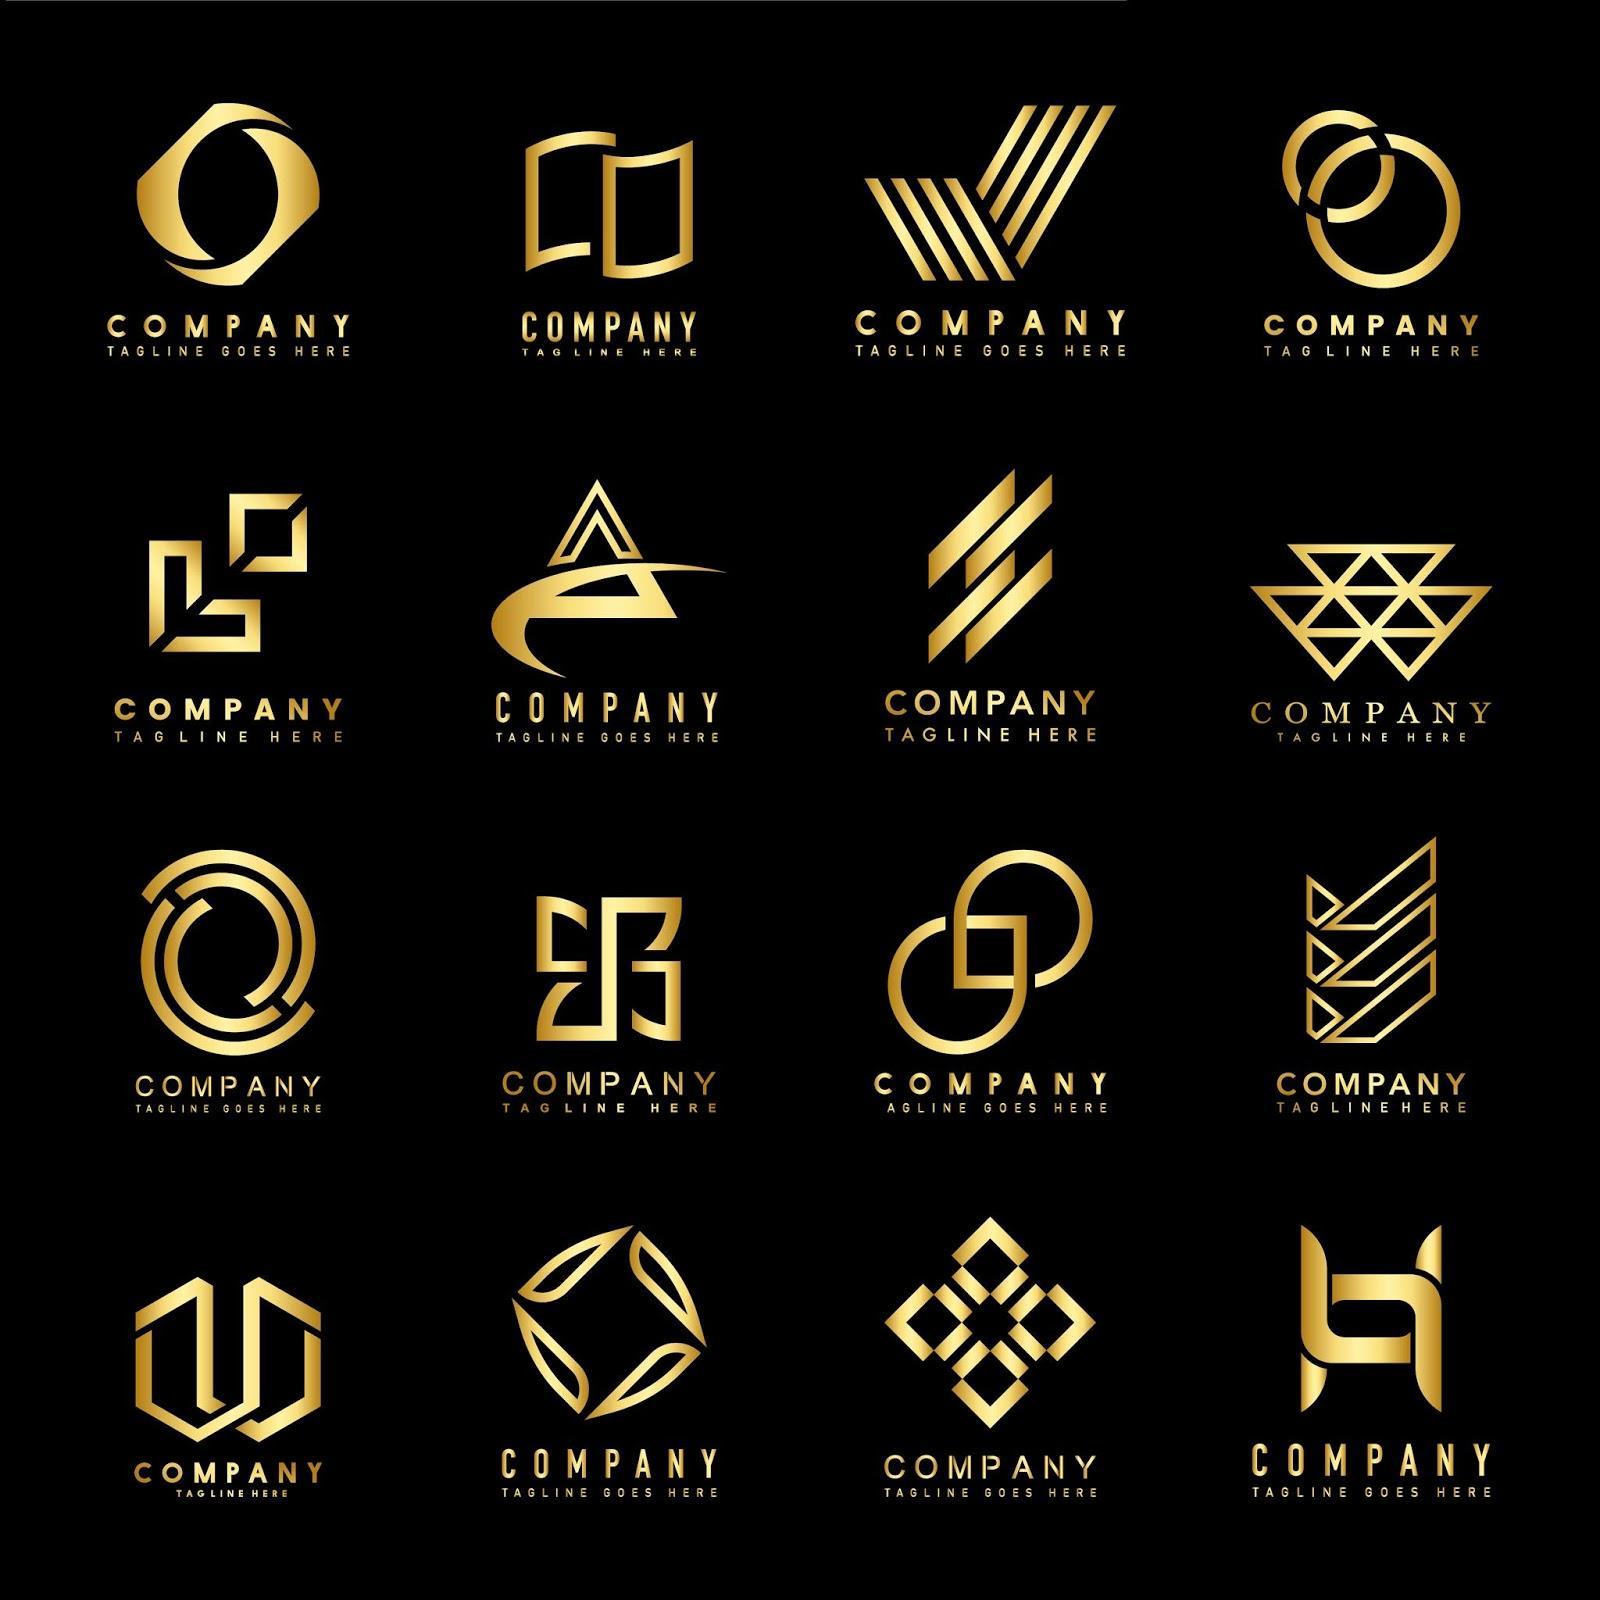 Những kiểu logo công ty màu vàng đen trông rất sang trọng